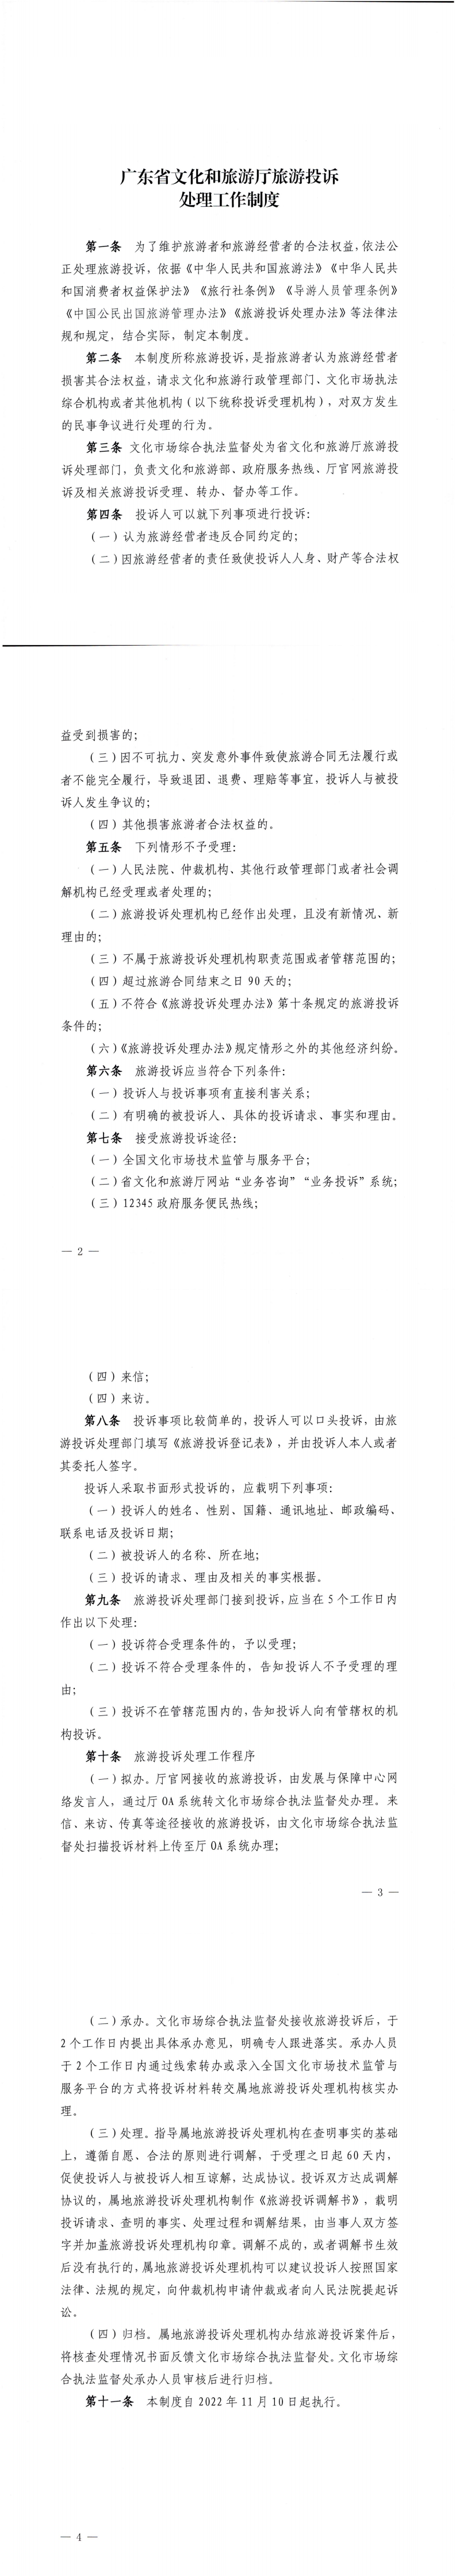 广东省文文化和旅游投诉处理工作制度_0.png